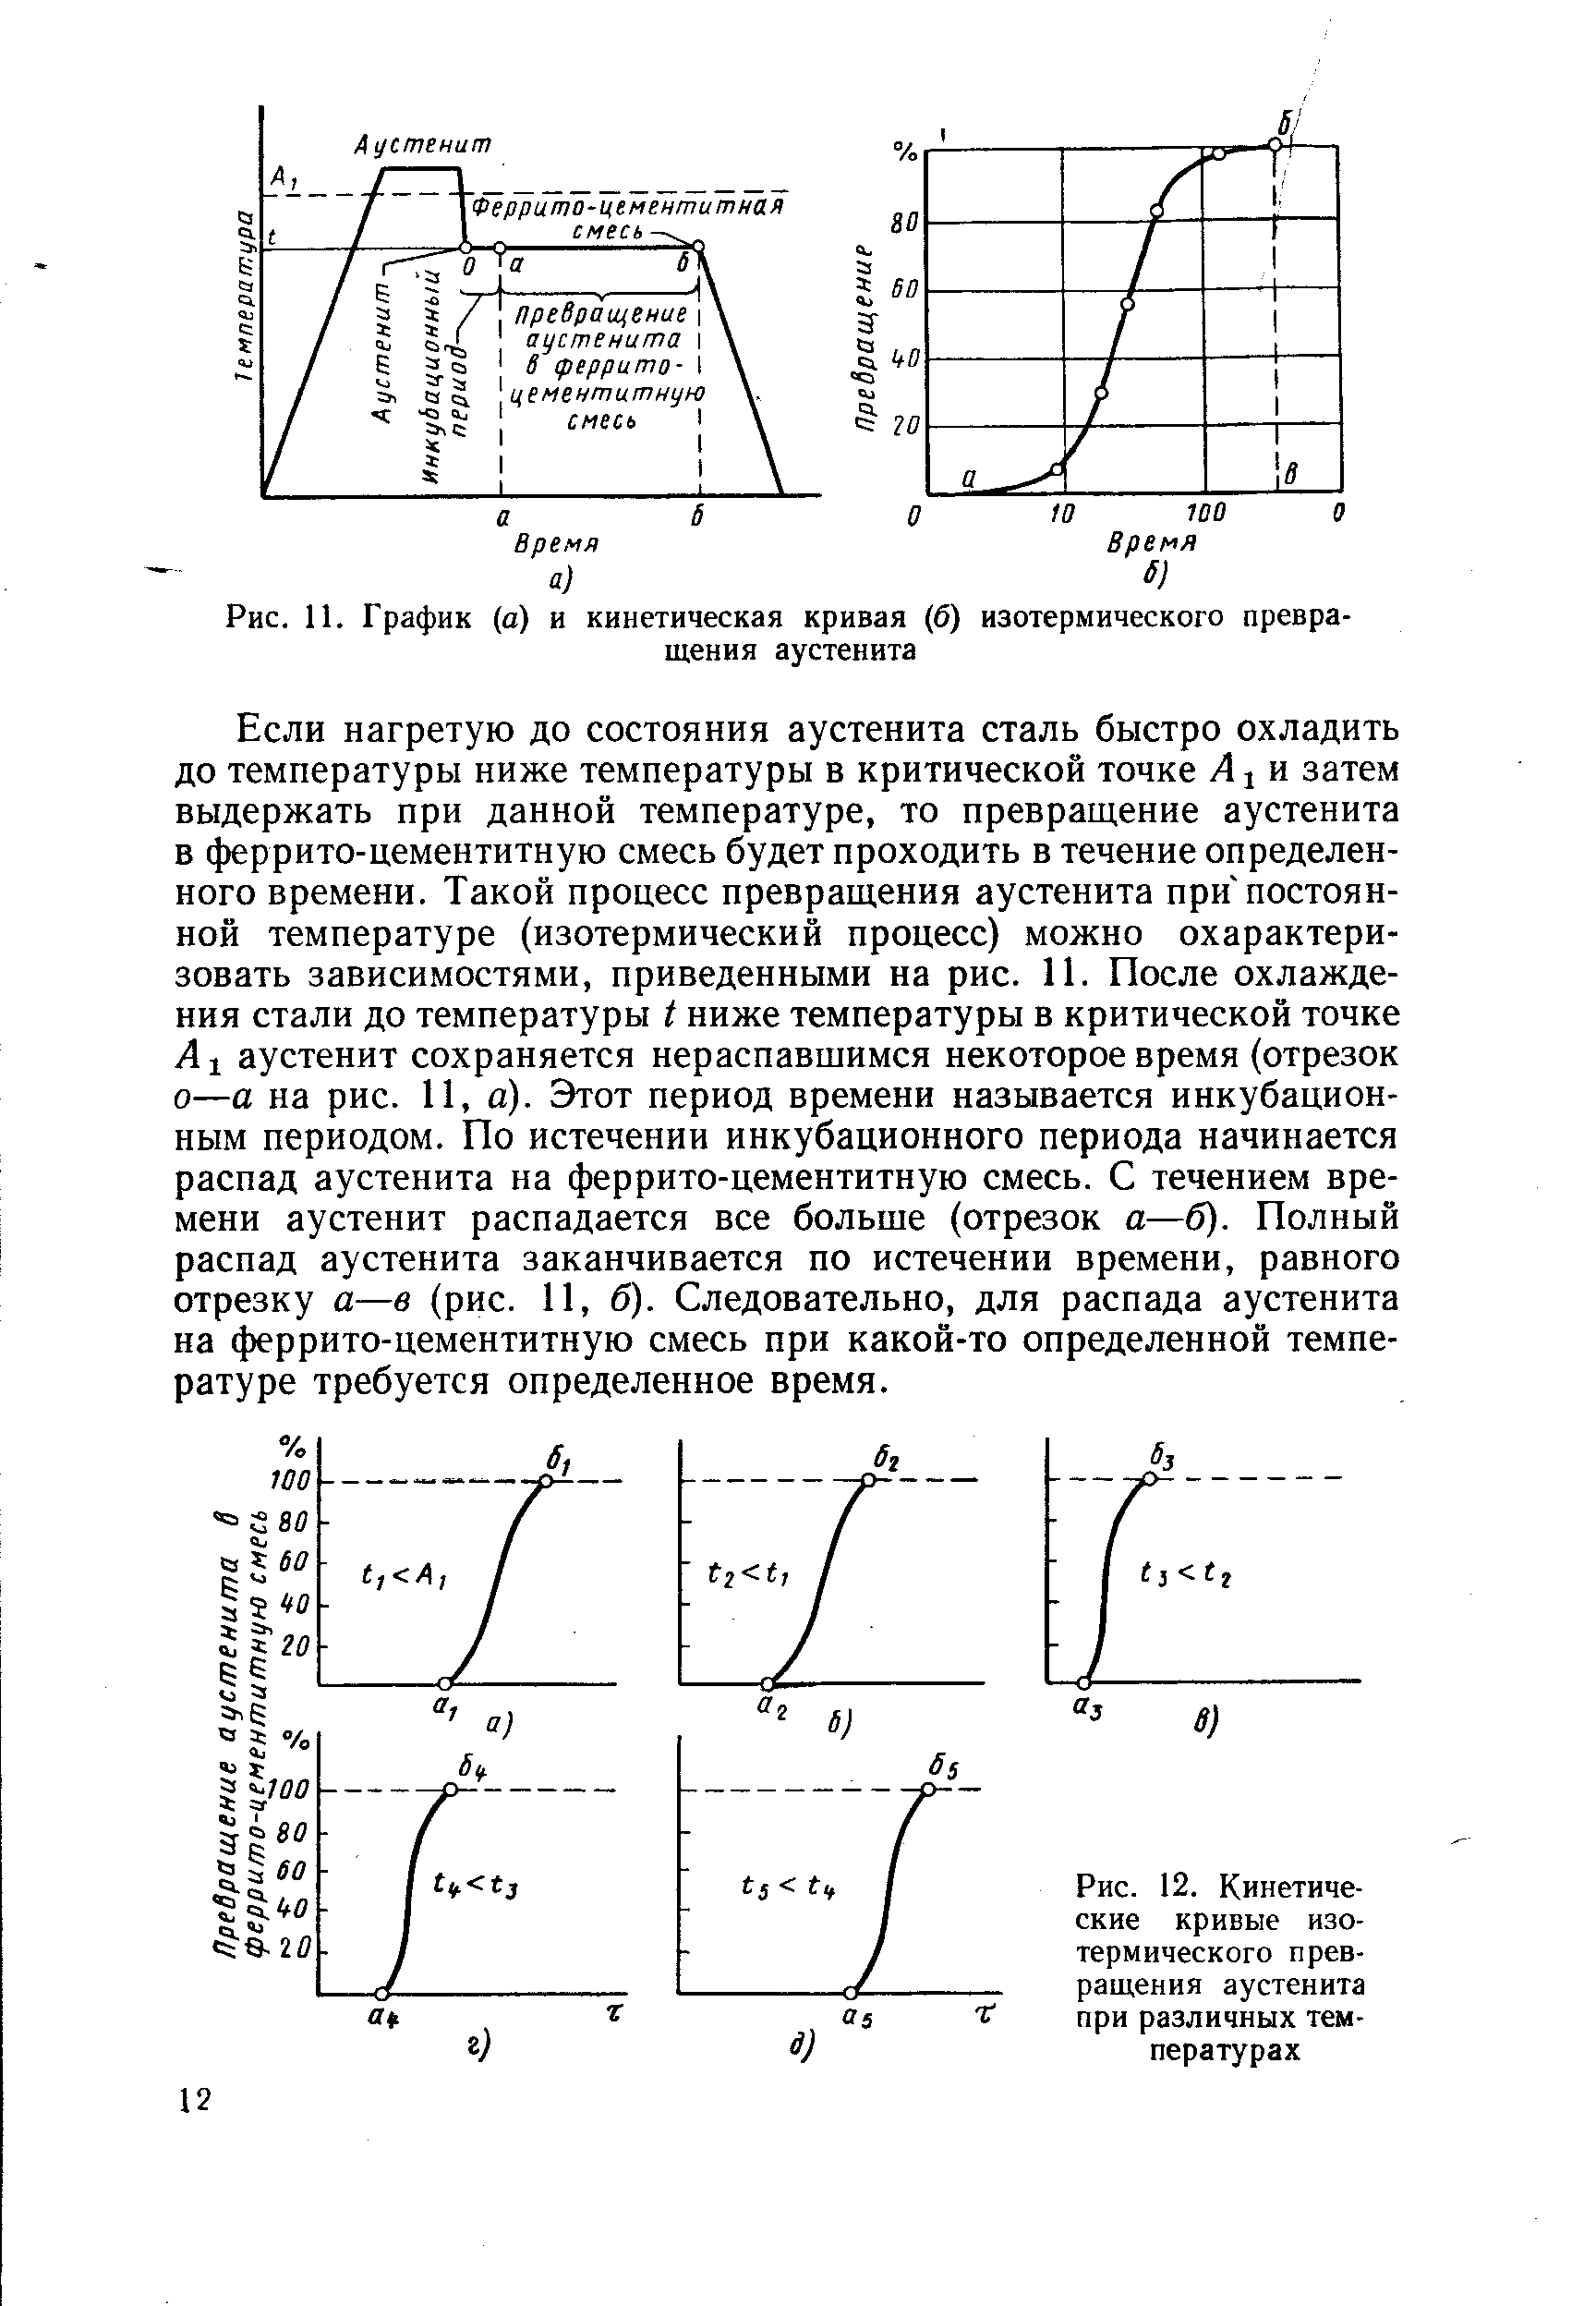 Рис. 12. Кинетические кривые изотермического превращения аустенита при различных температурах
